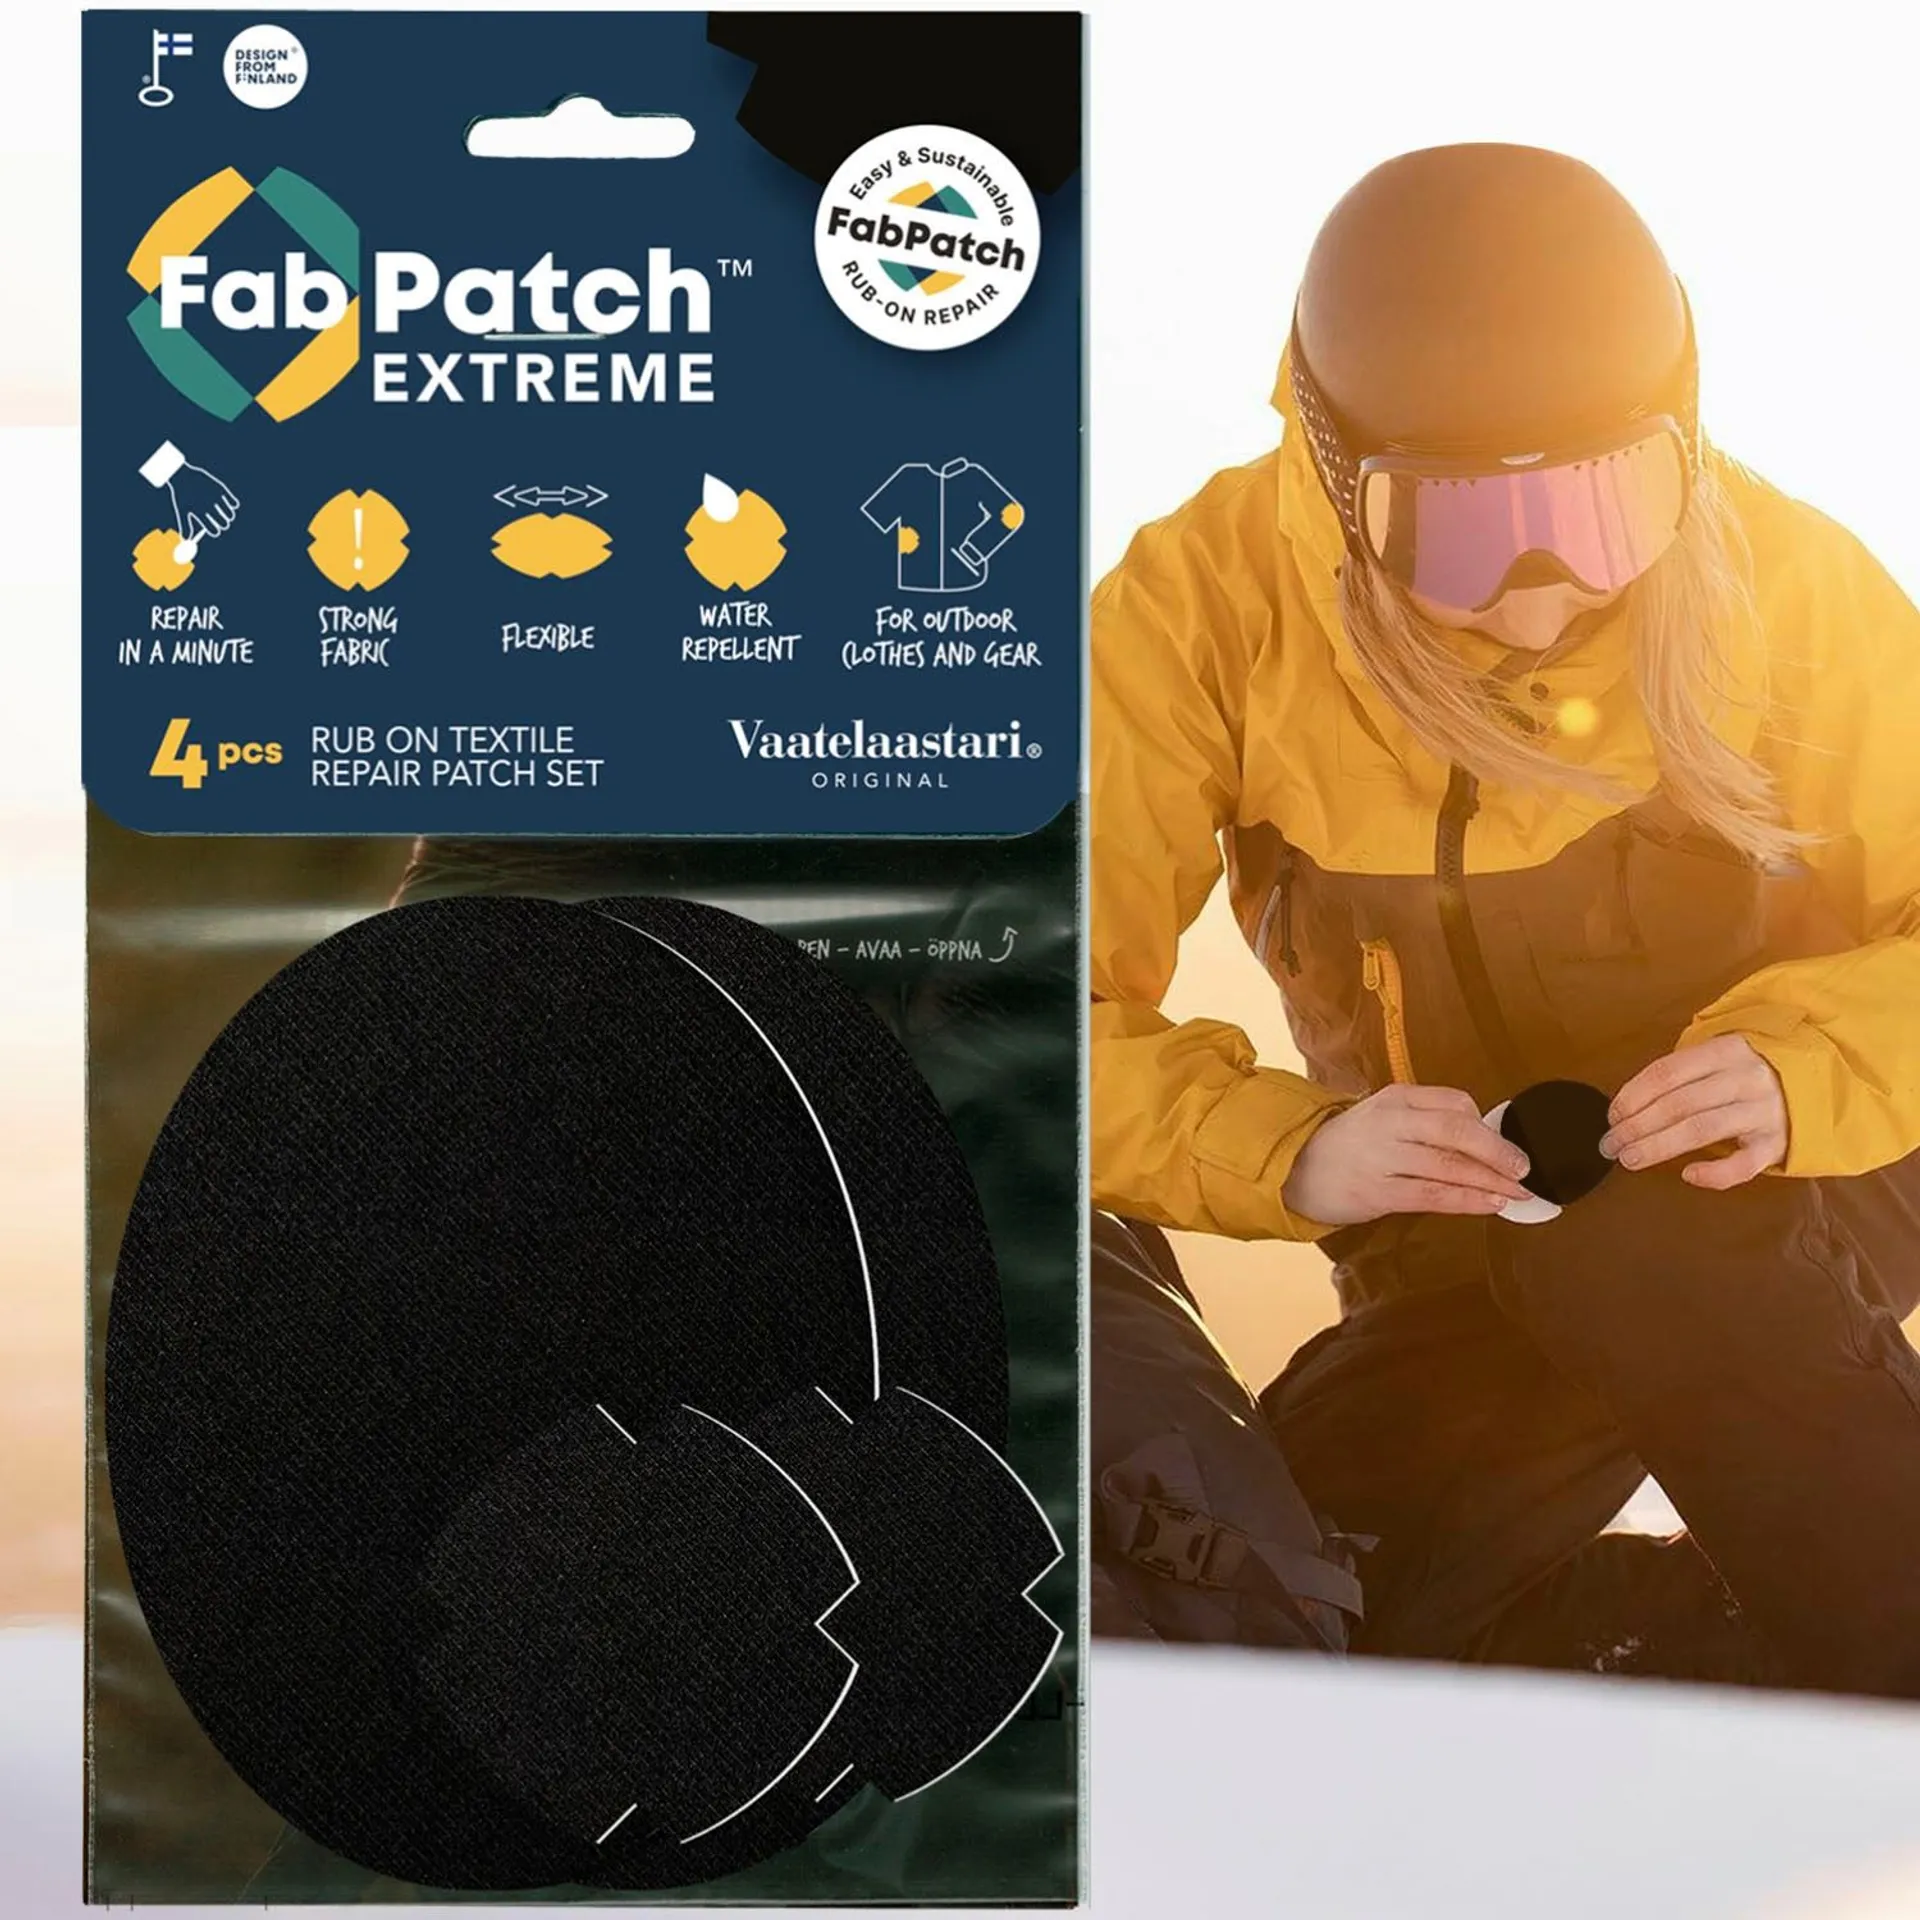 FabPatch Vaatelaastari, Extreme, hankaamalla kiinnittyvä tekstiilien korjauspaikka - 2